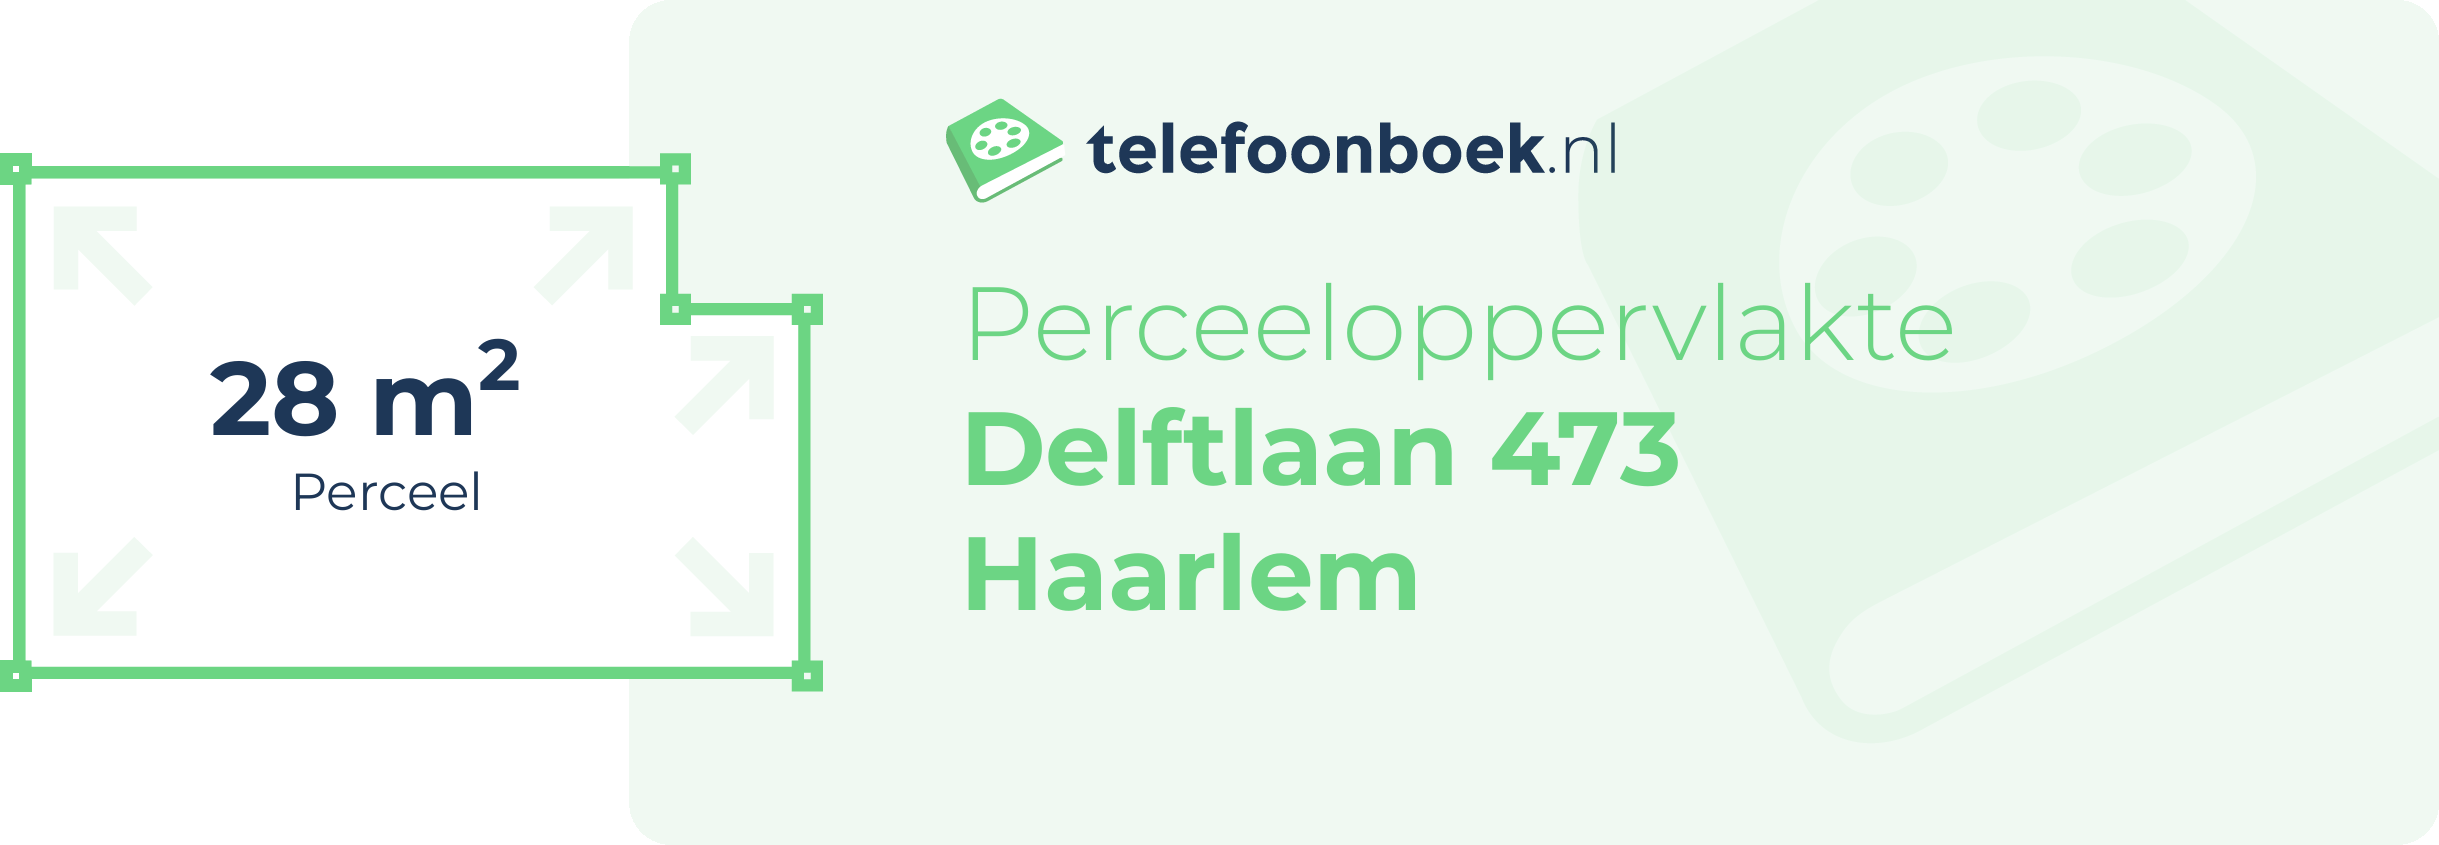 Perceeloppervlakte Delftlaan 473 Haarlem